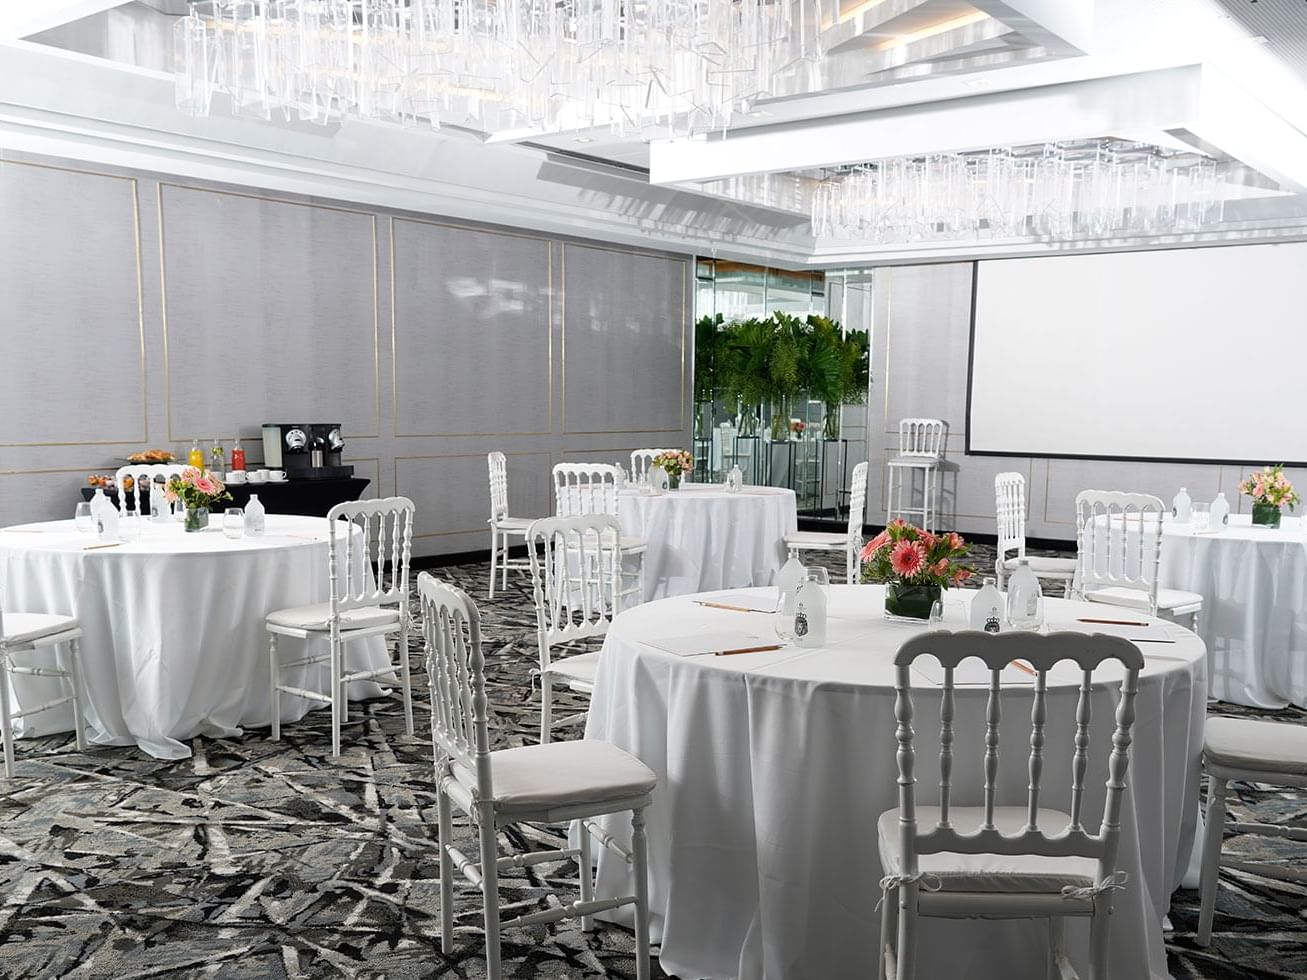 
Mesas decoradas con flores en una habitación del Hotel Emperador Buenos